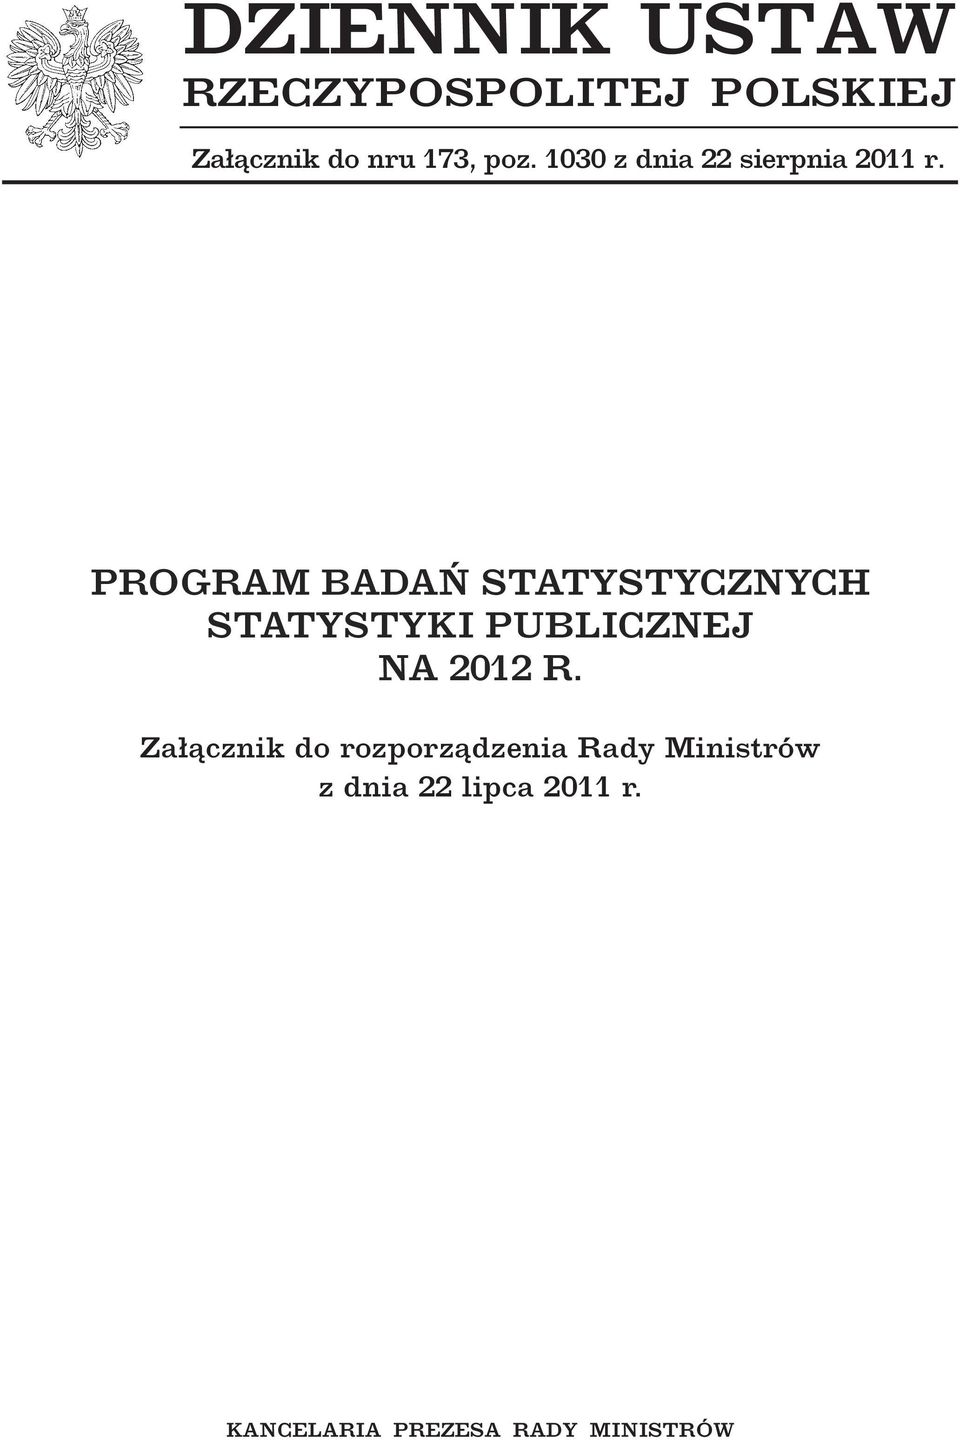 PROGRAM BADAŃ STATYSTYCZNYCH STATYSTYKI PUBLICZNEJ NA 2012 R.